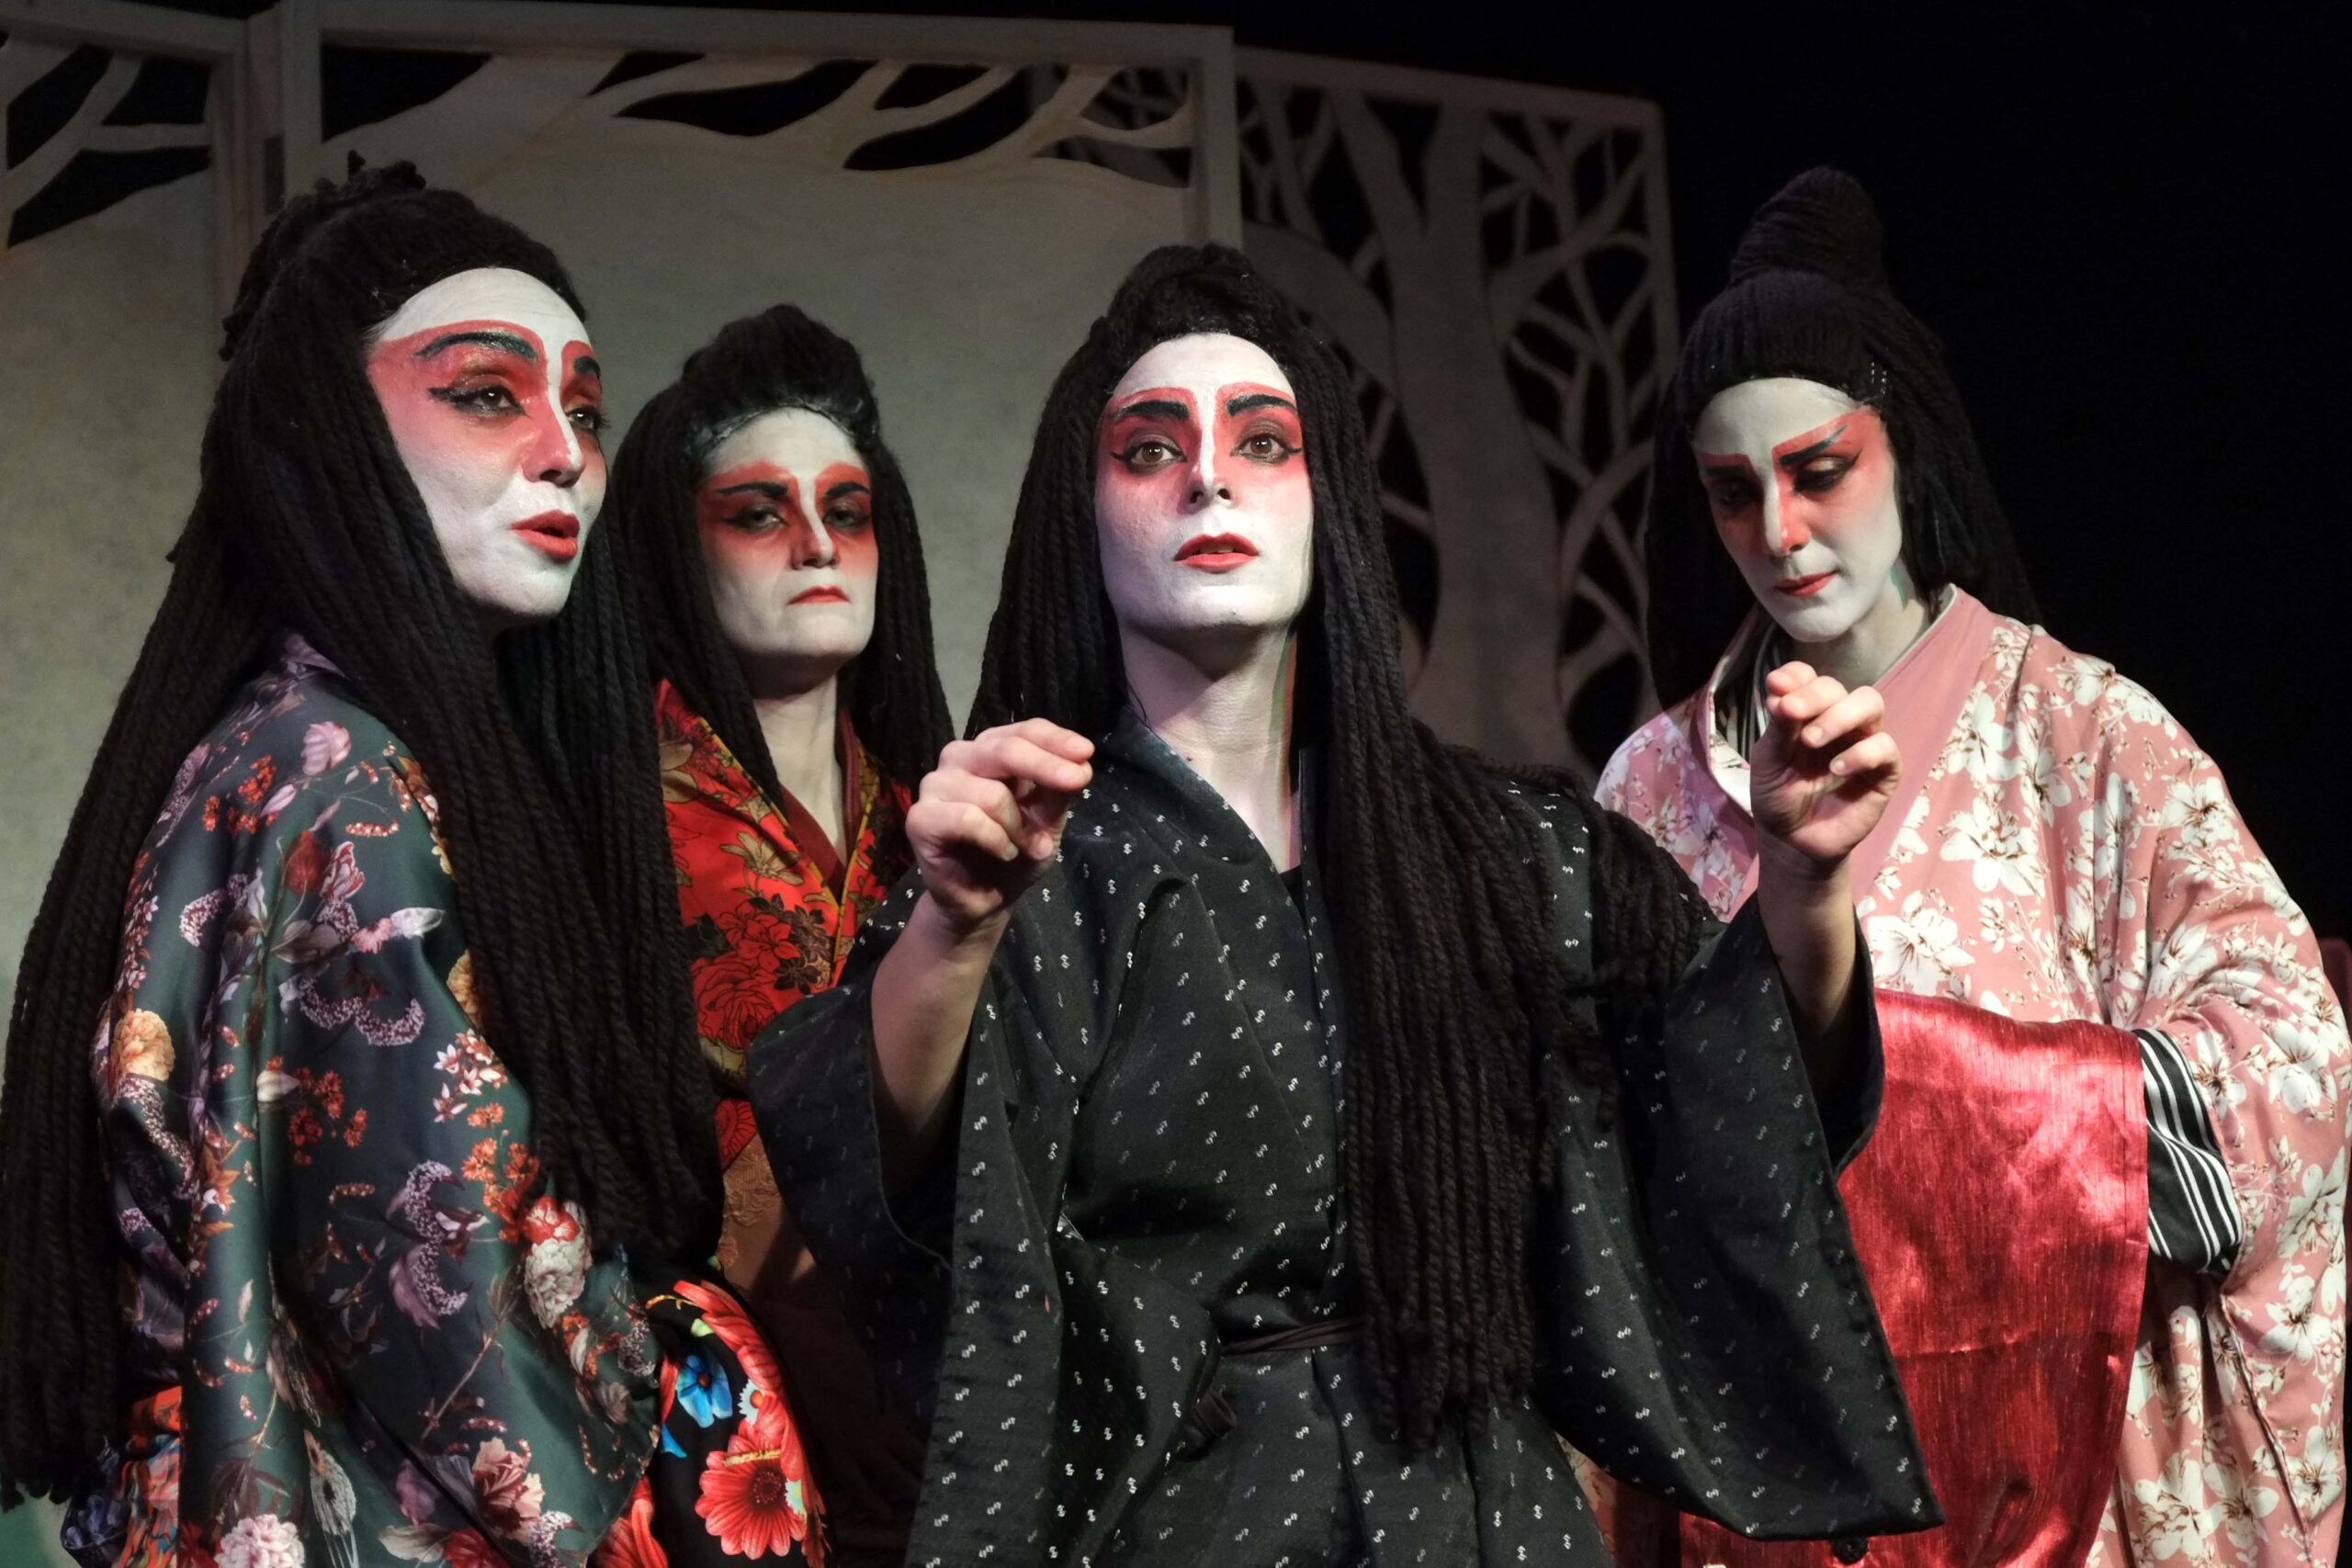 Θεατρική Ομάδα Κωφών «Τρελά Χρώματα»: «Ιστορίες Φαντασμάτων από την Ιαπωνία»  στο Θέατρο Άβατον – Tetragwno.gr